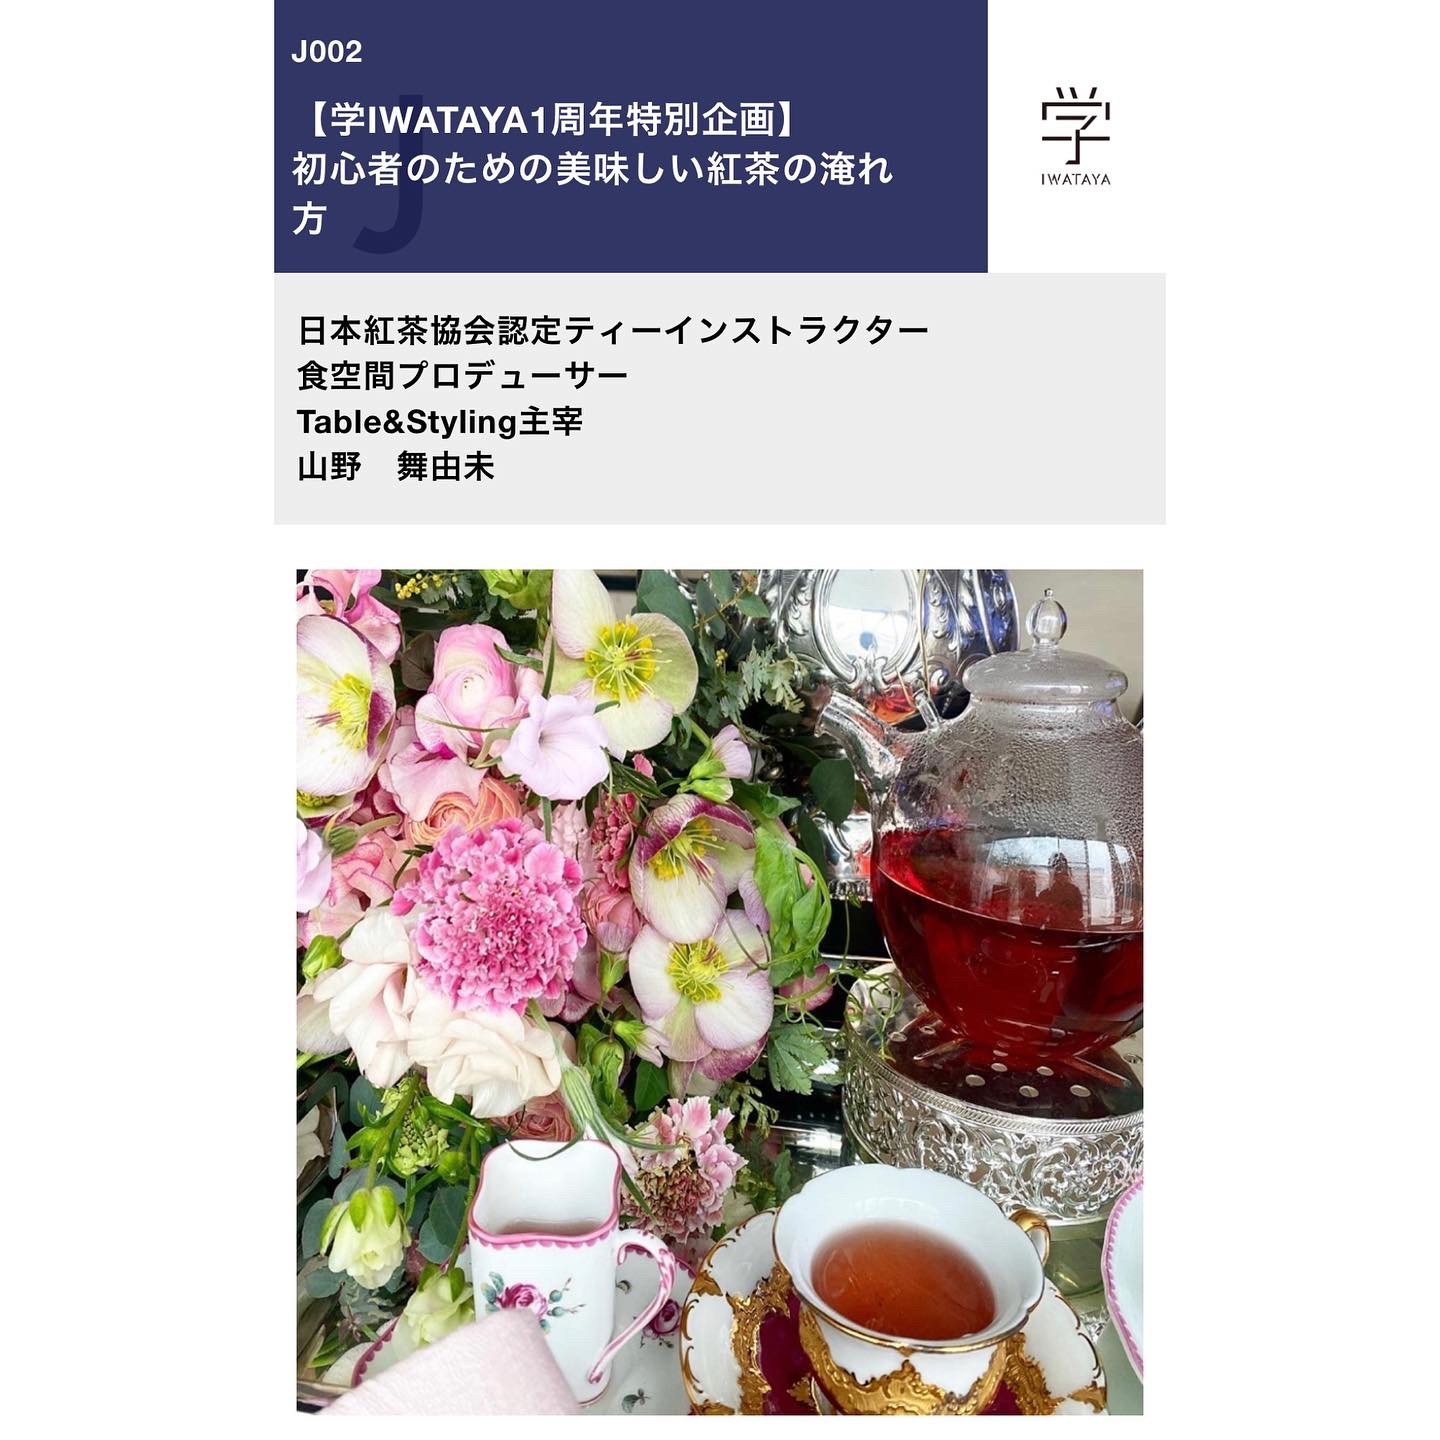 学iwataya一周年記念企画_c0366777_22013213.jpeg